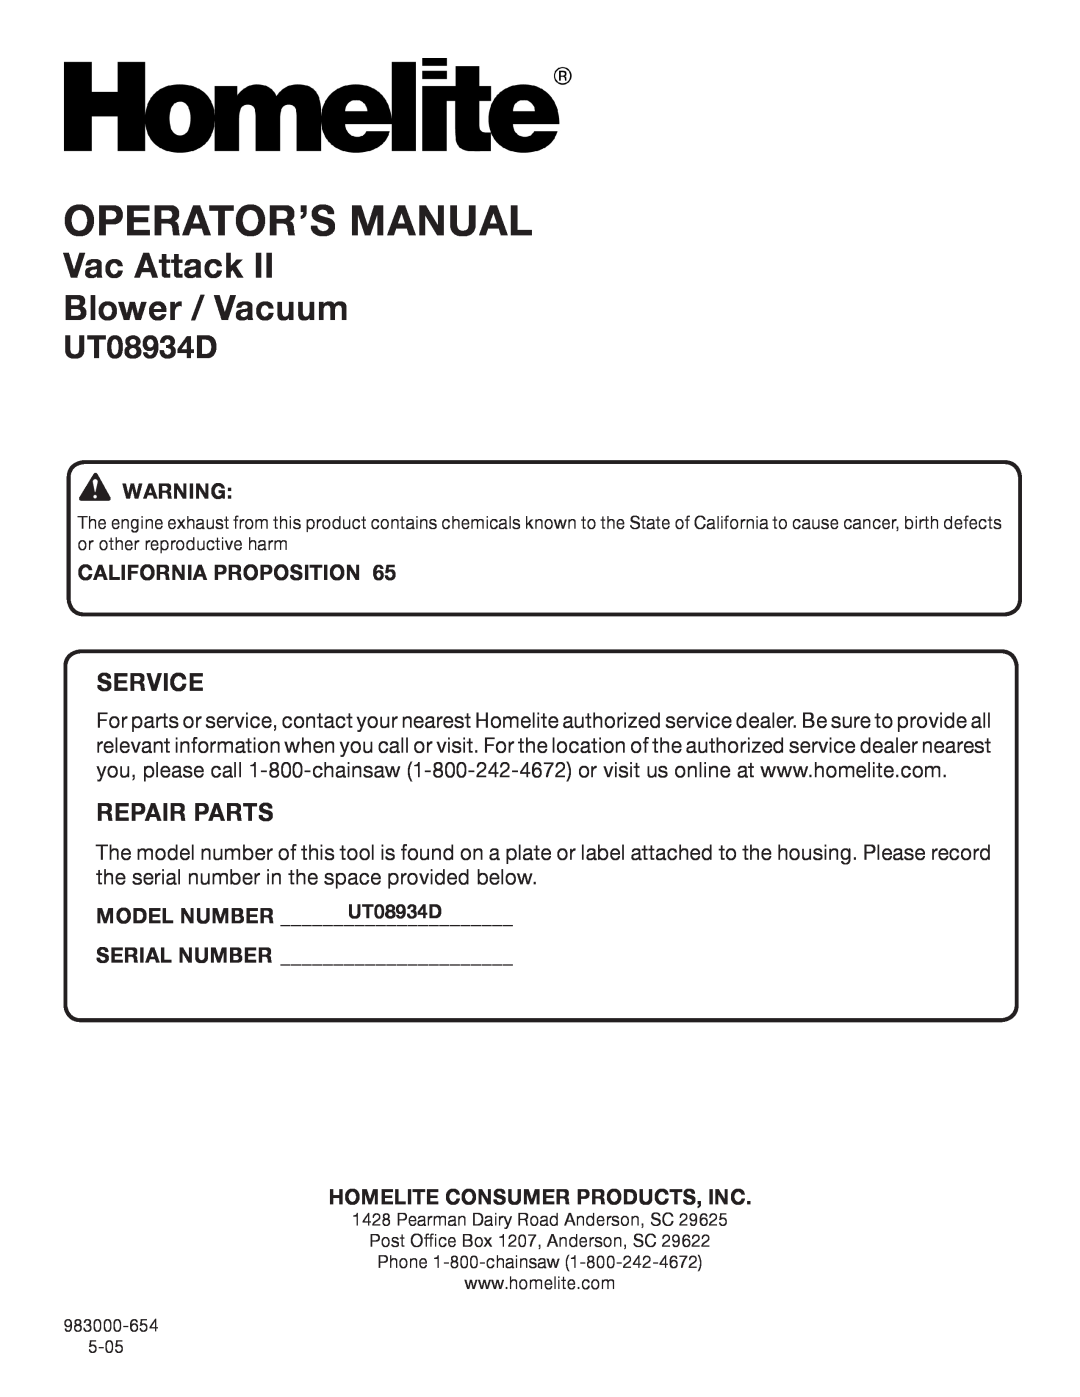 Homelite UT08934D manual Operator’S Manual, Vac Attack Blower / Vacuum, Service, Repair Parts 